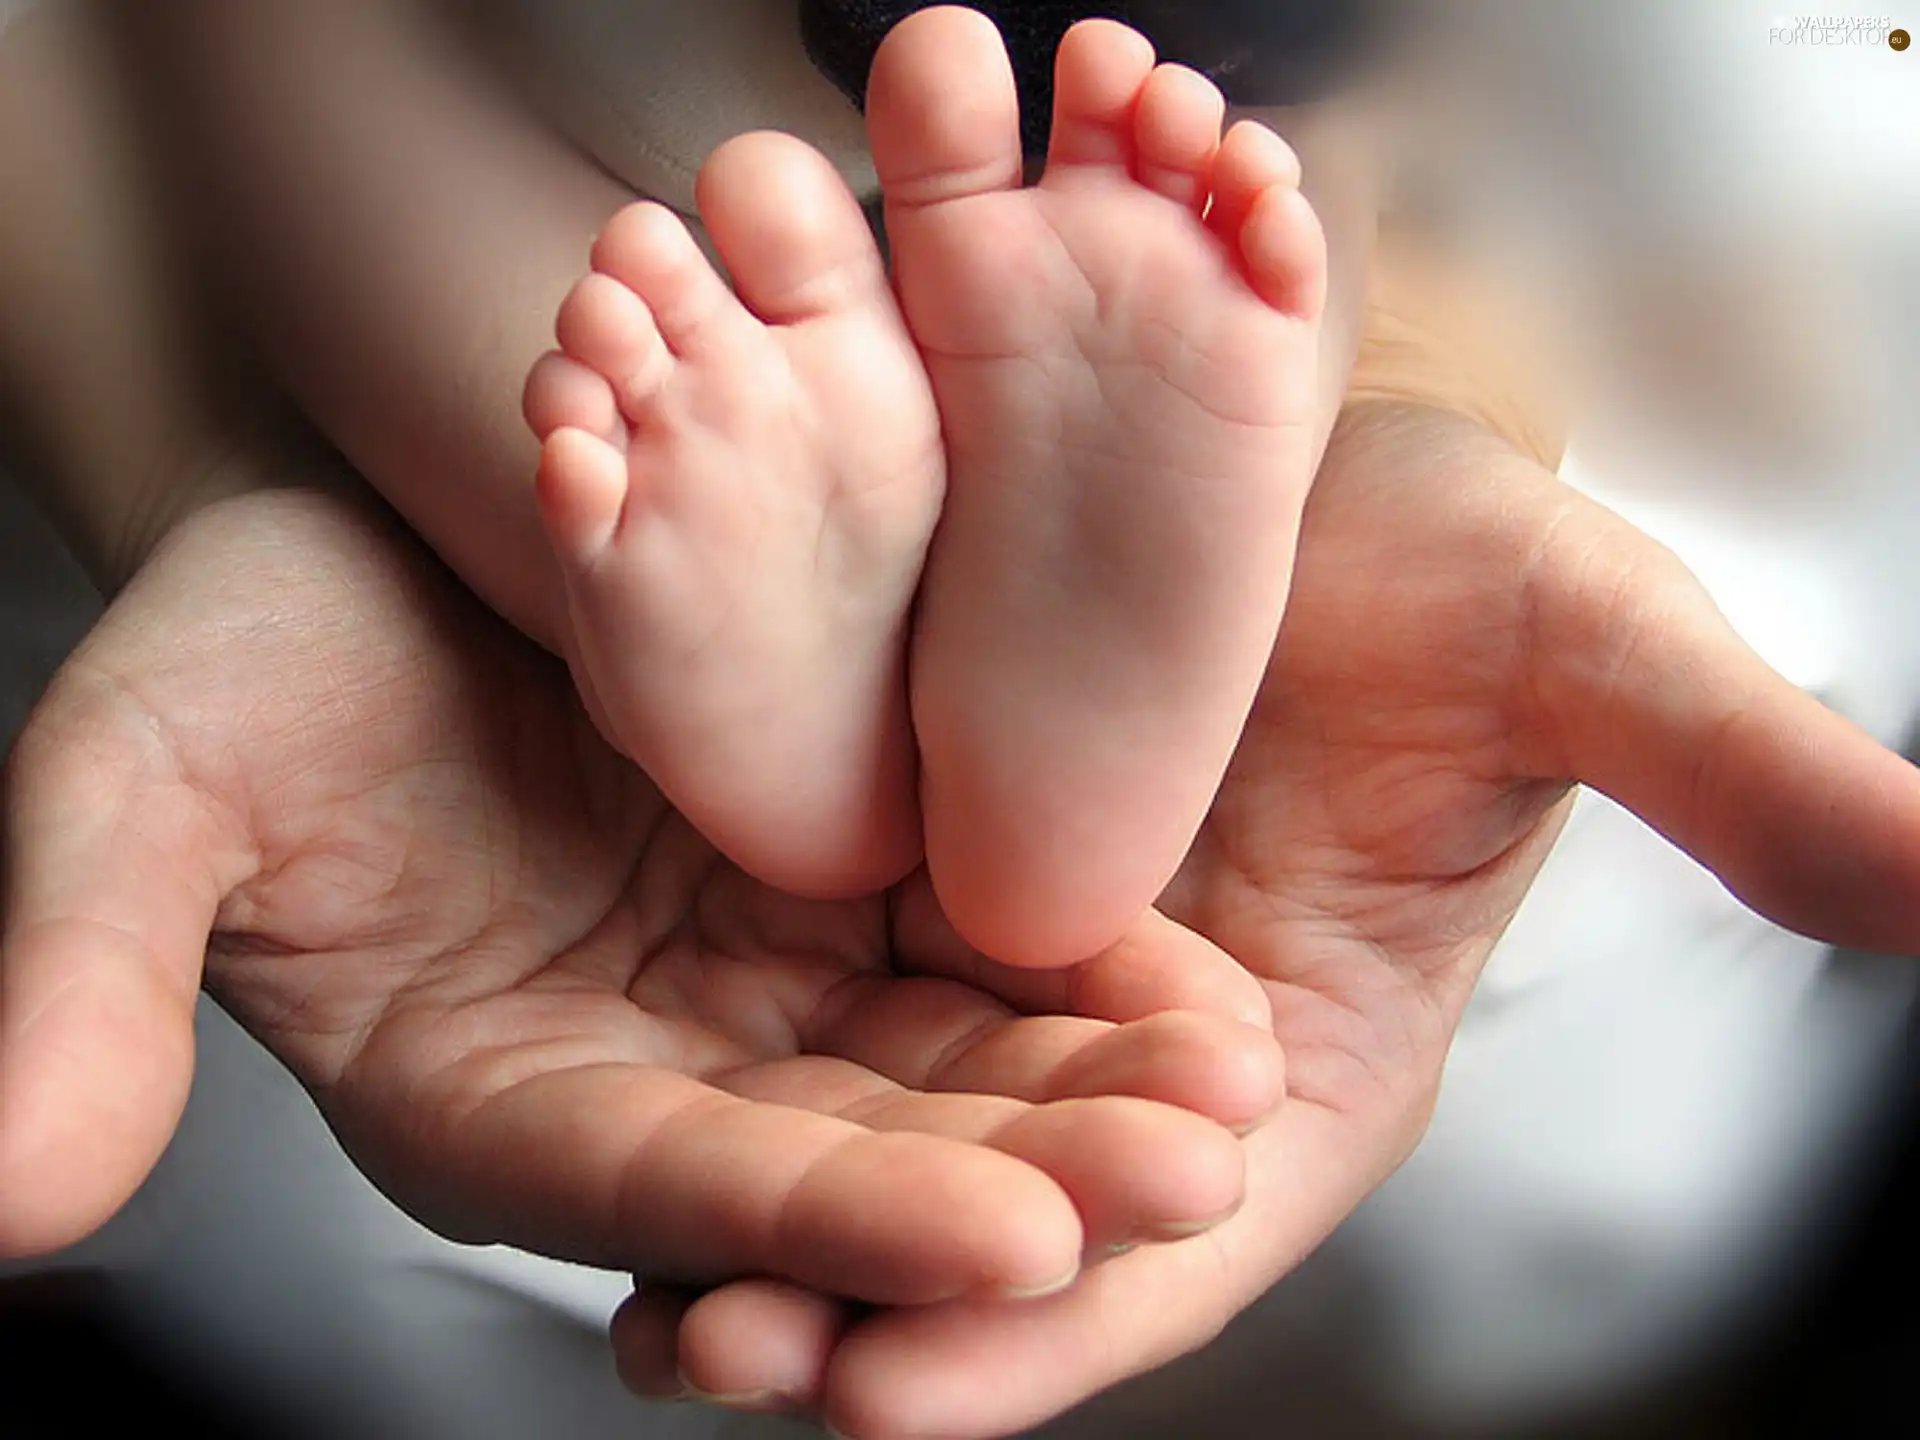 Foot, men, hands, child-